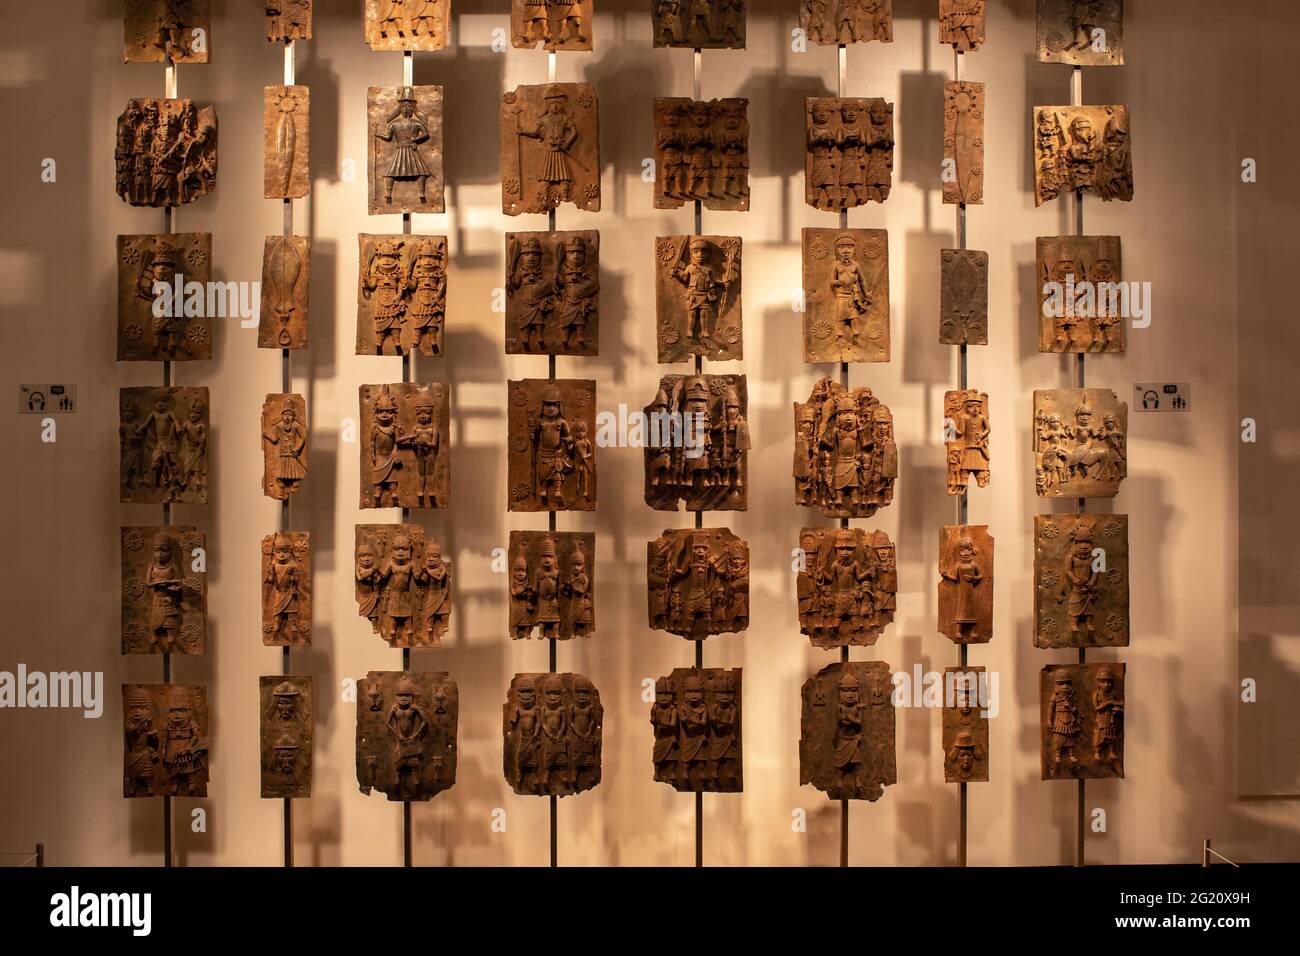 The Benin Bronzes, The British Museum, London Uk Stock Photo